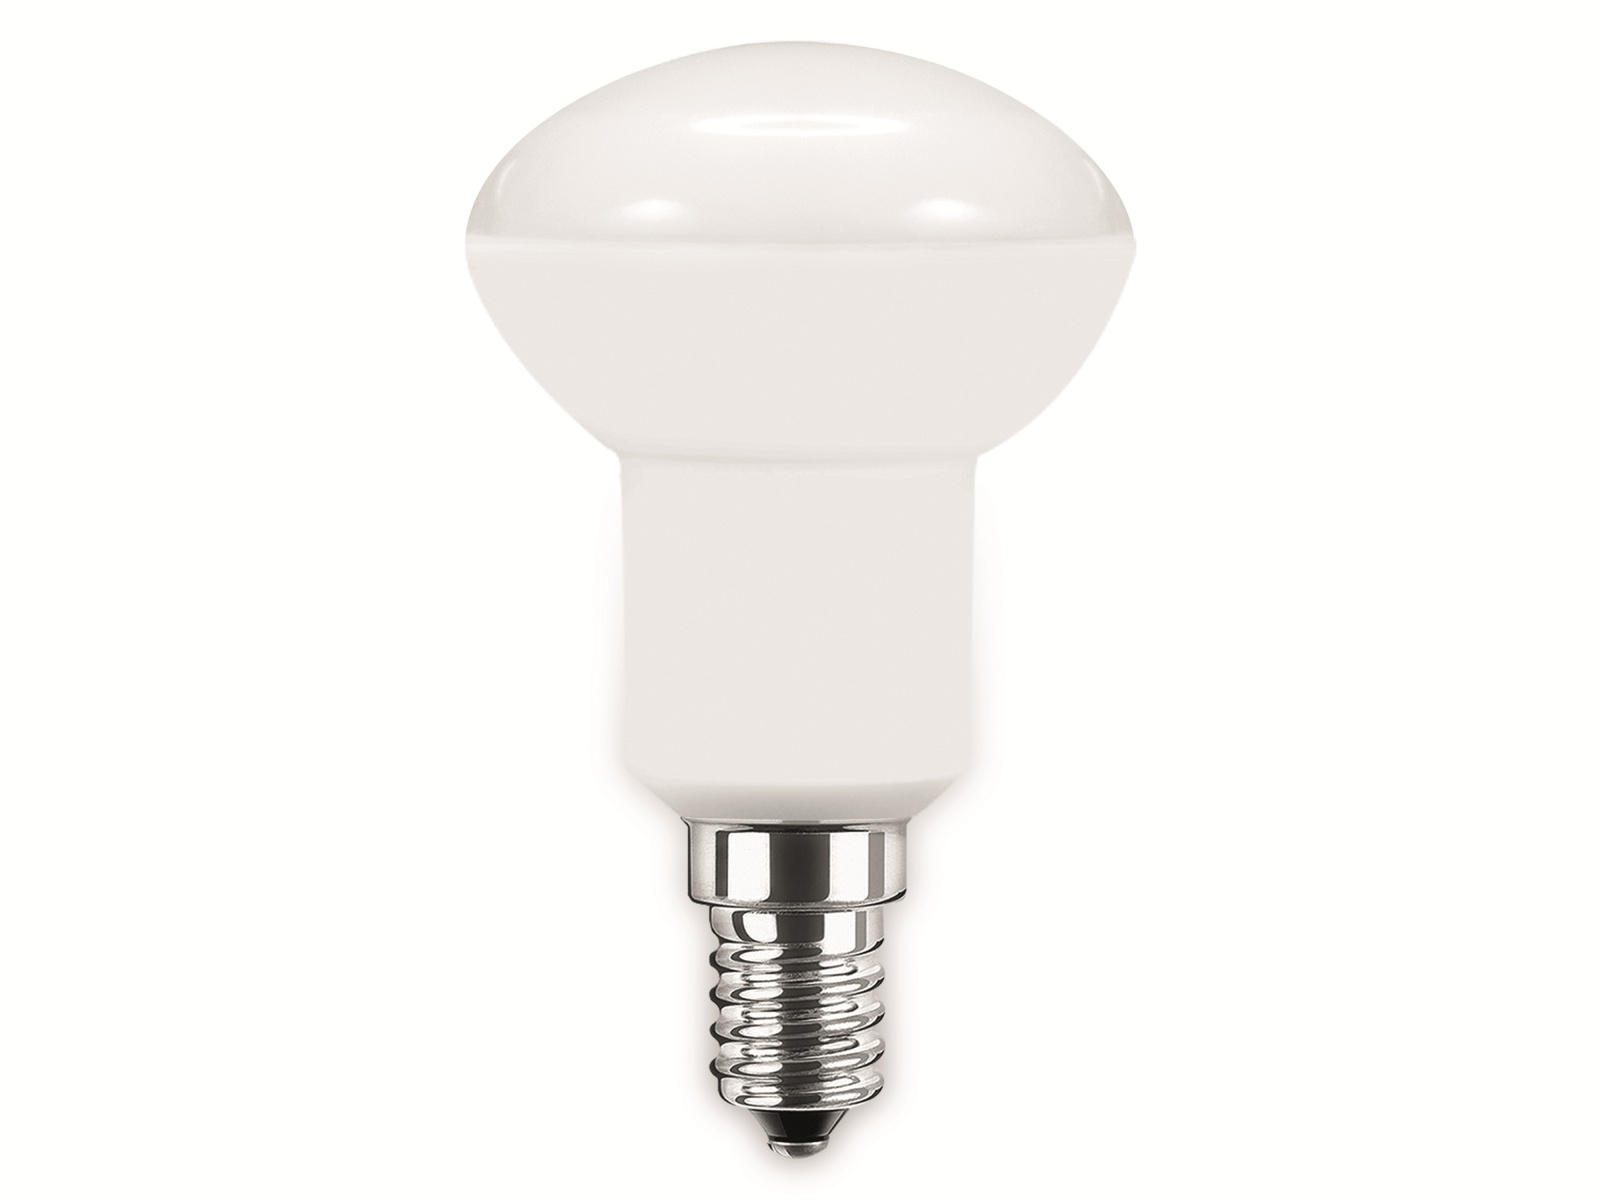 BLULAXA LED-SMD-Lampe, R50, E14, EEK: E, 5 W, 470 lm, 2700 K